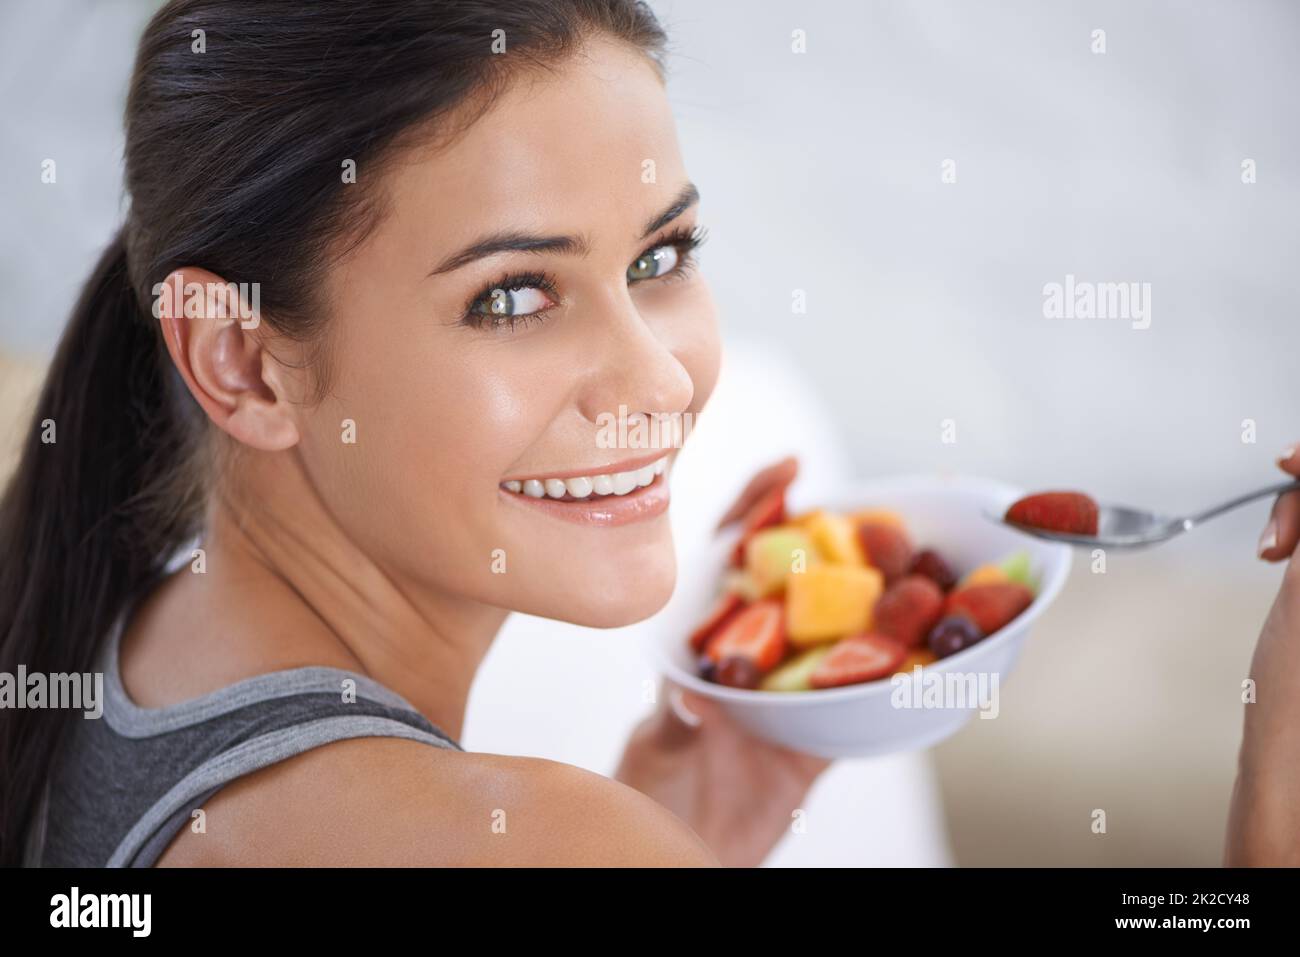 Mein gesunder Snack. Eine junge Frau, die eine Schüssel mit gehacktem Obst isst. Stockfoto